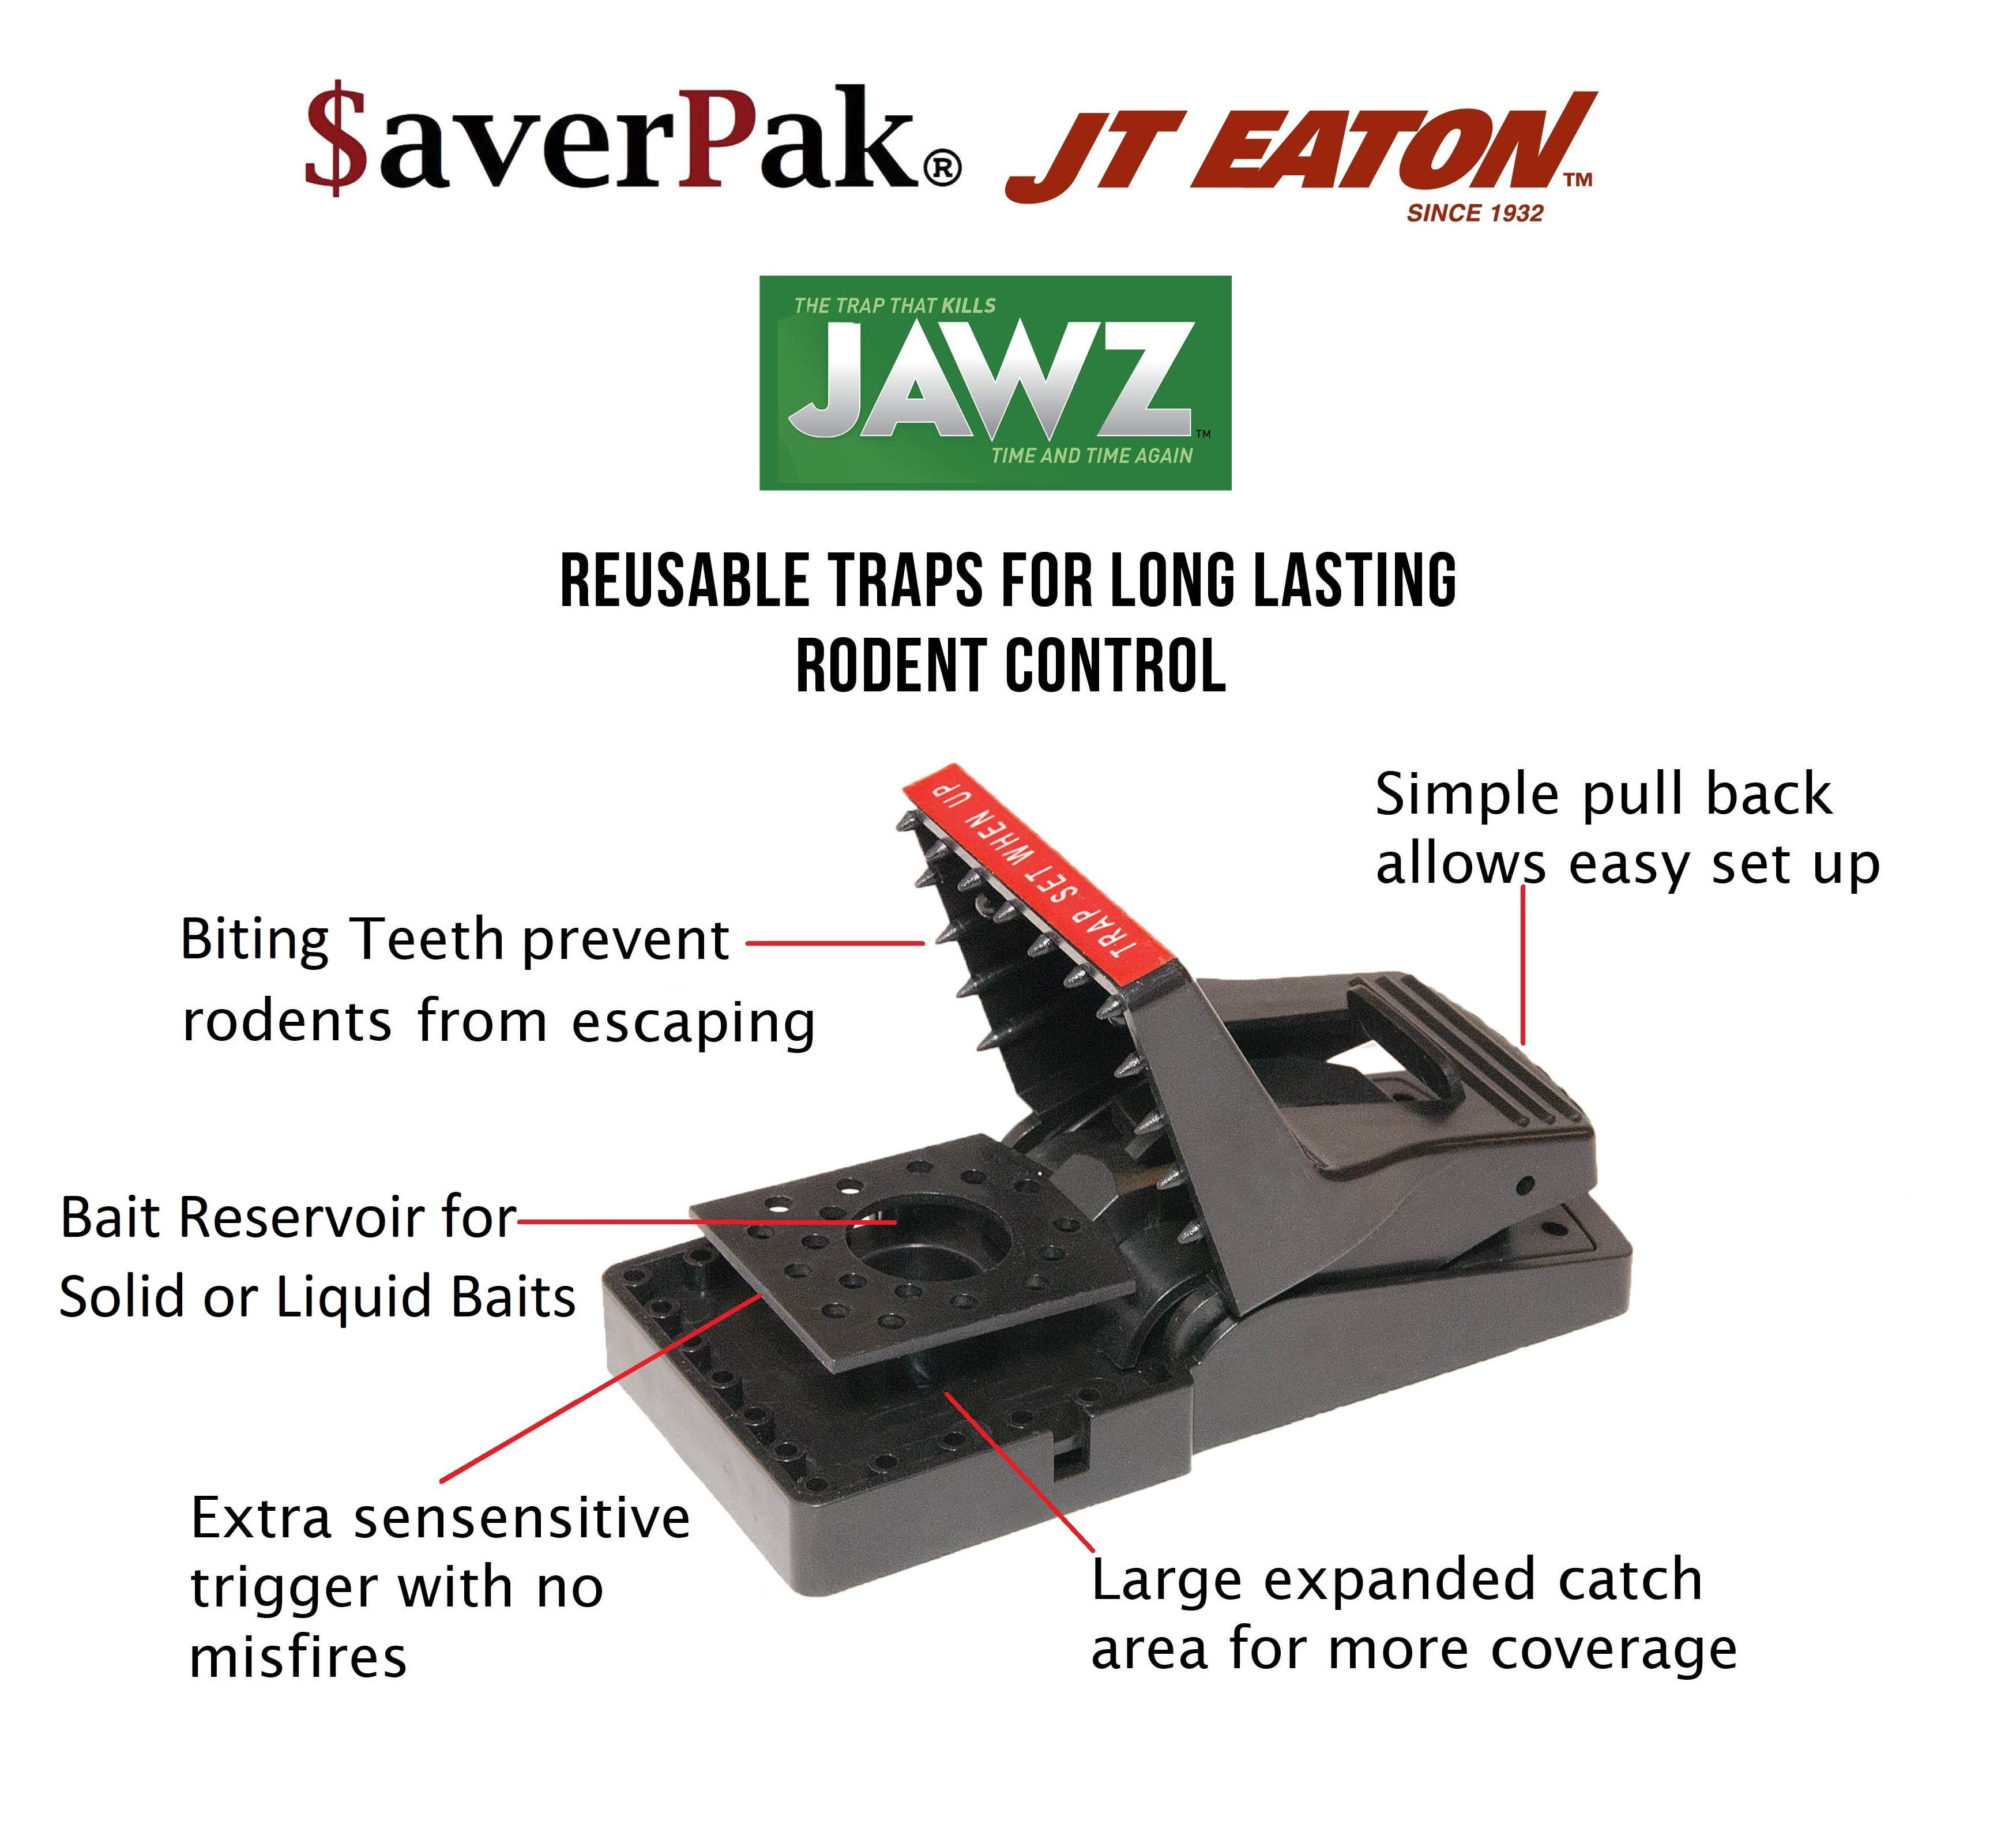 averPak 4 Pack - Includes 4 JT Eaton Jawz Rat and Chipmunk Traps